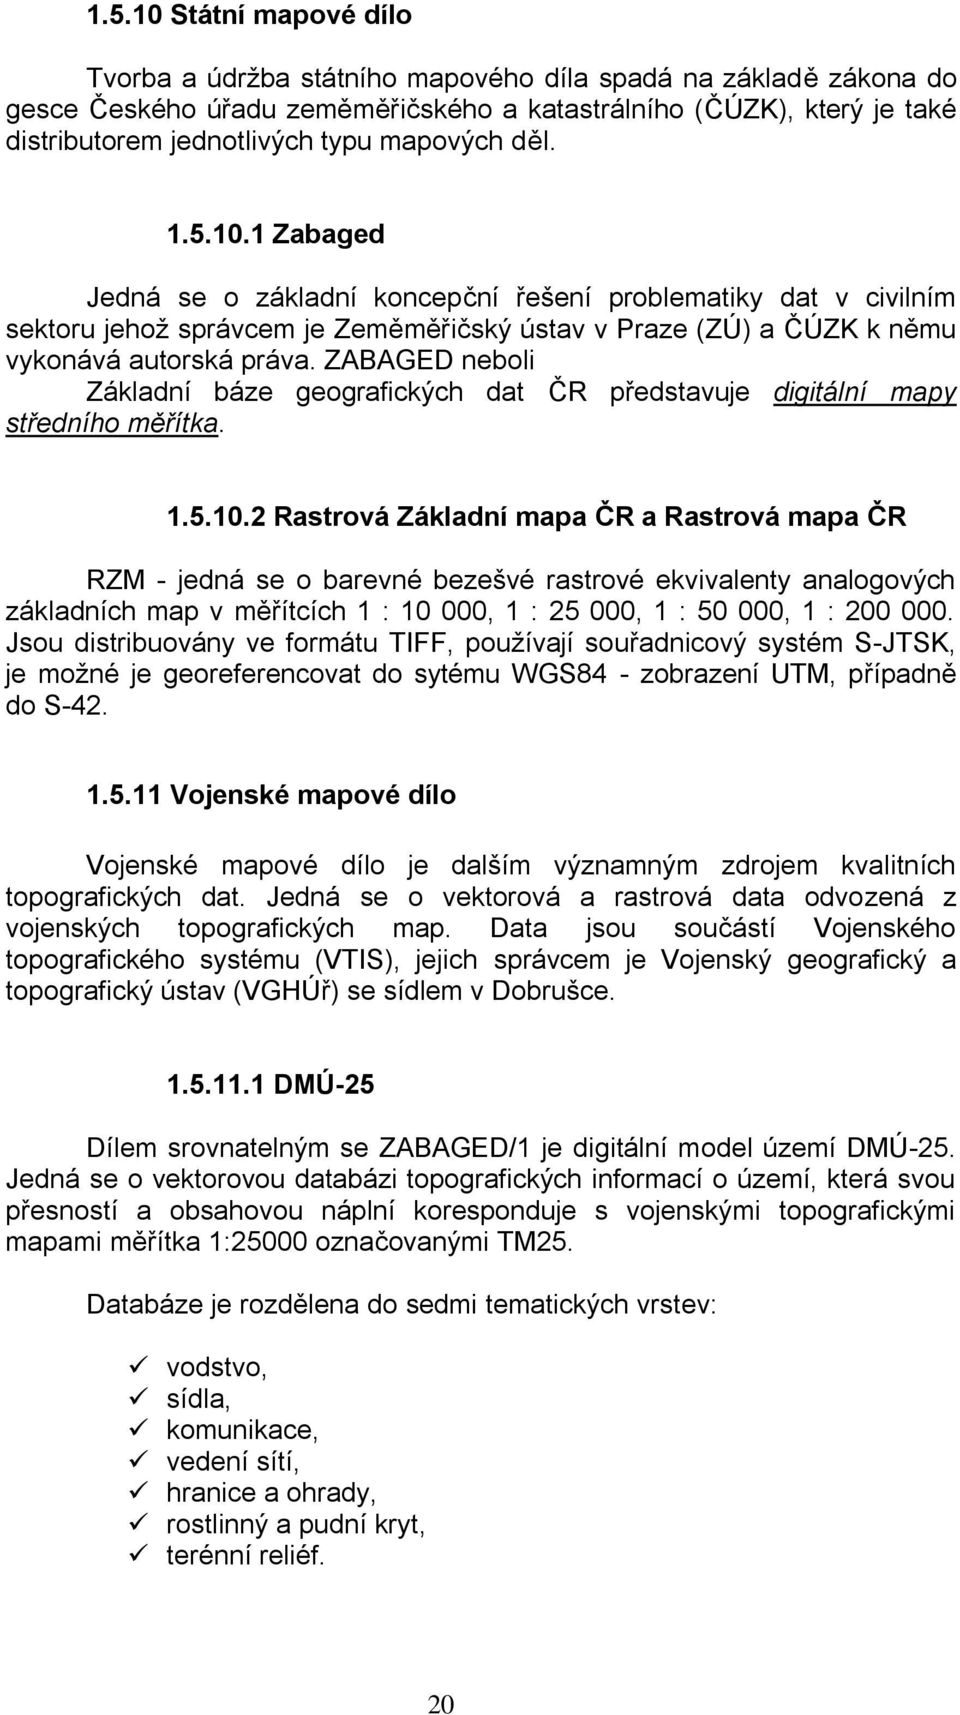 ZABAGED neboli Základní báze geografických dat ČR představuje digitální mapy středního měřítka. 1.5.10.